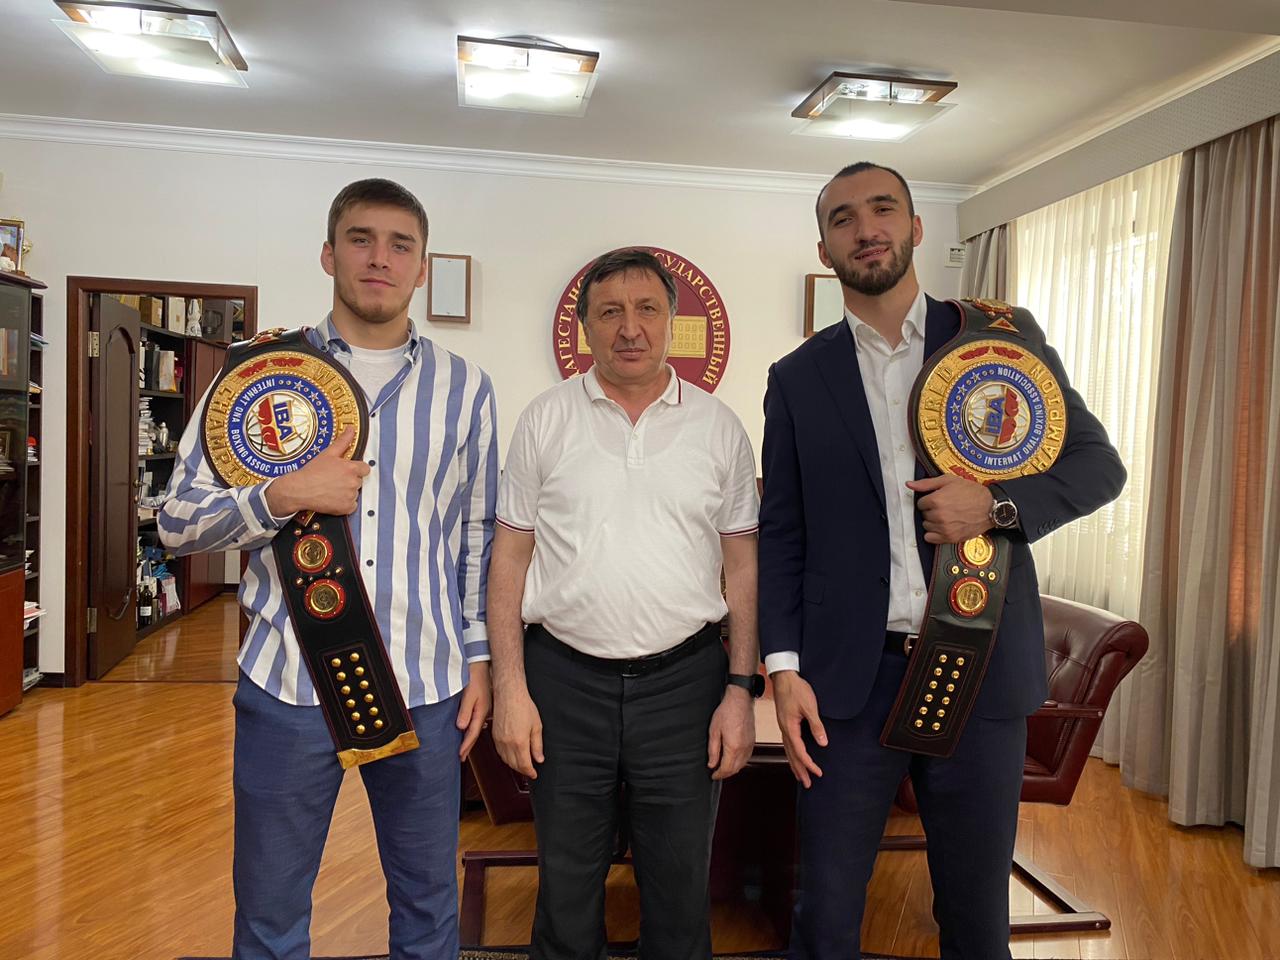   Чемпионов мира по боксу чествовали в ДГУ